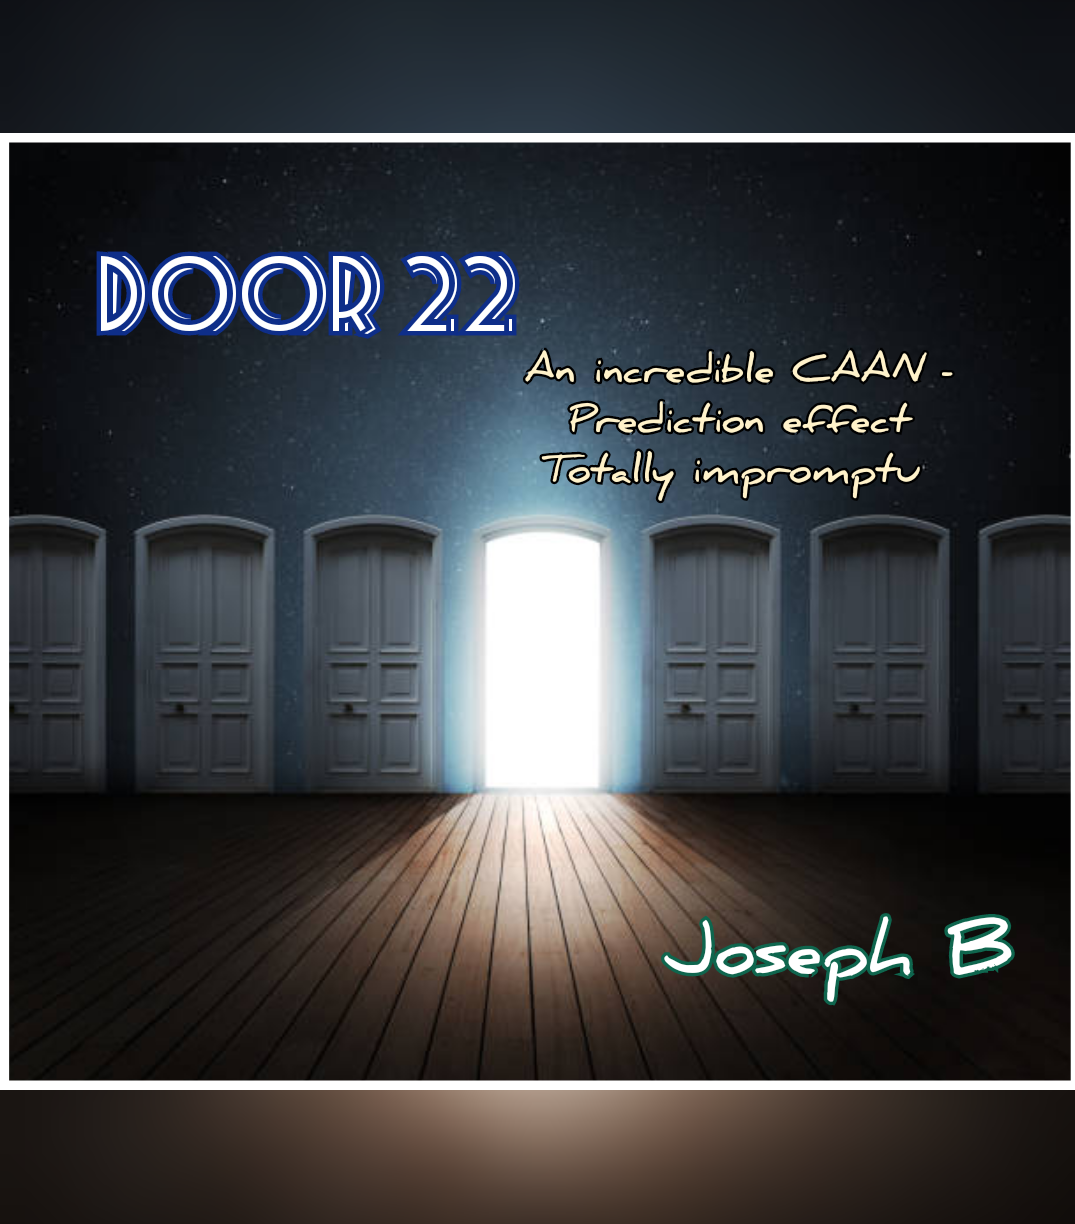 DOOR22 (Caan prediction) by Joseph B. (Mp4 Video Download)